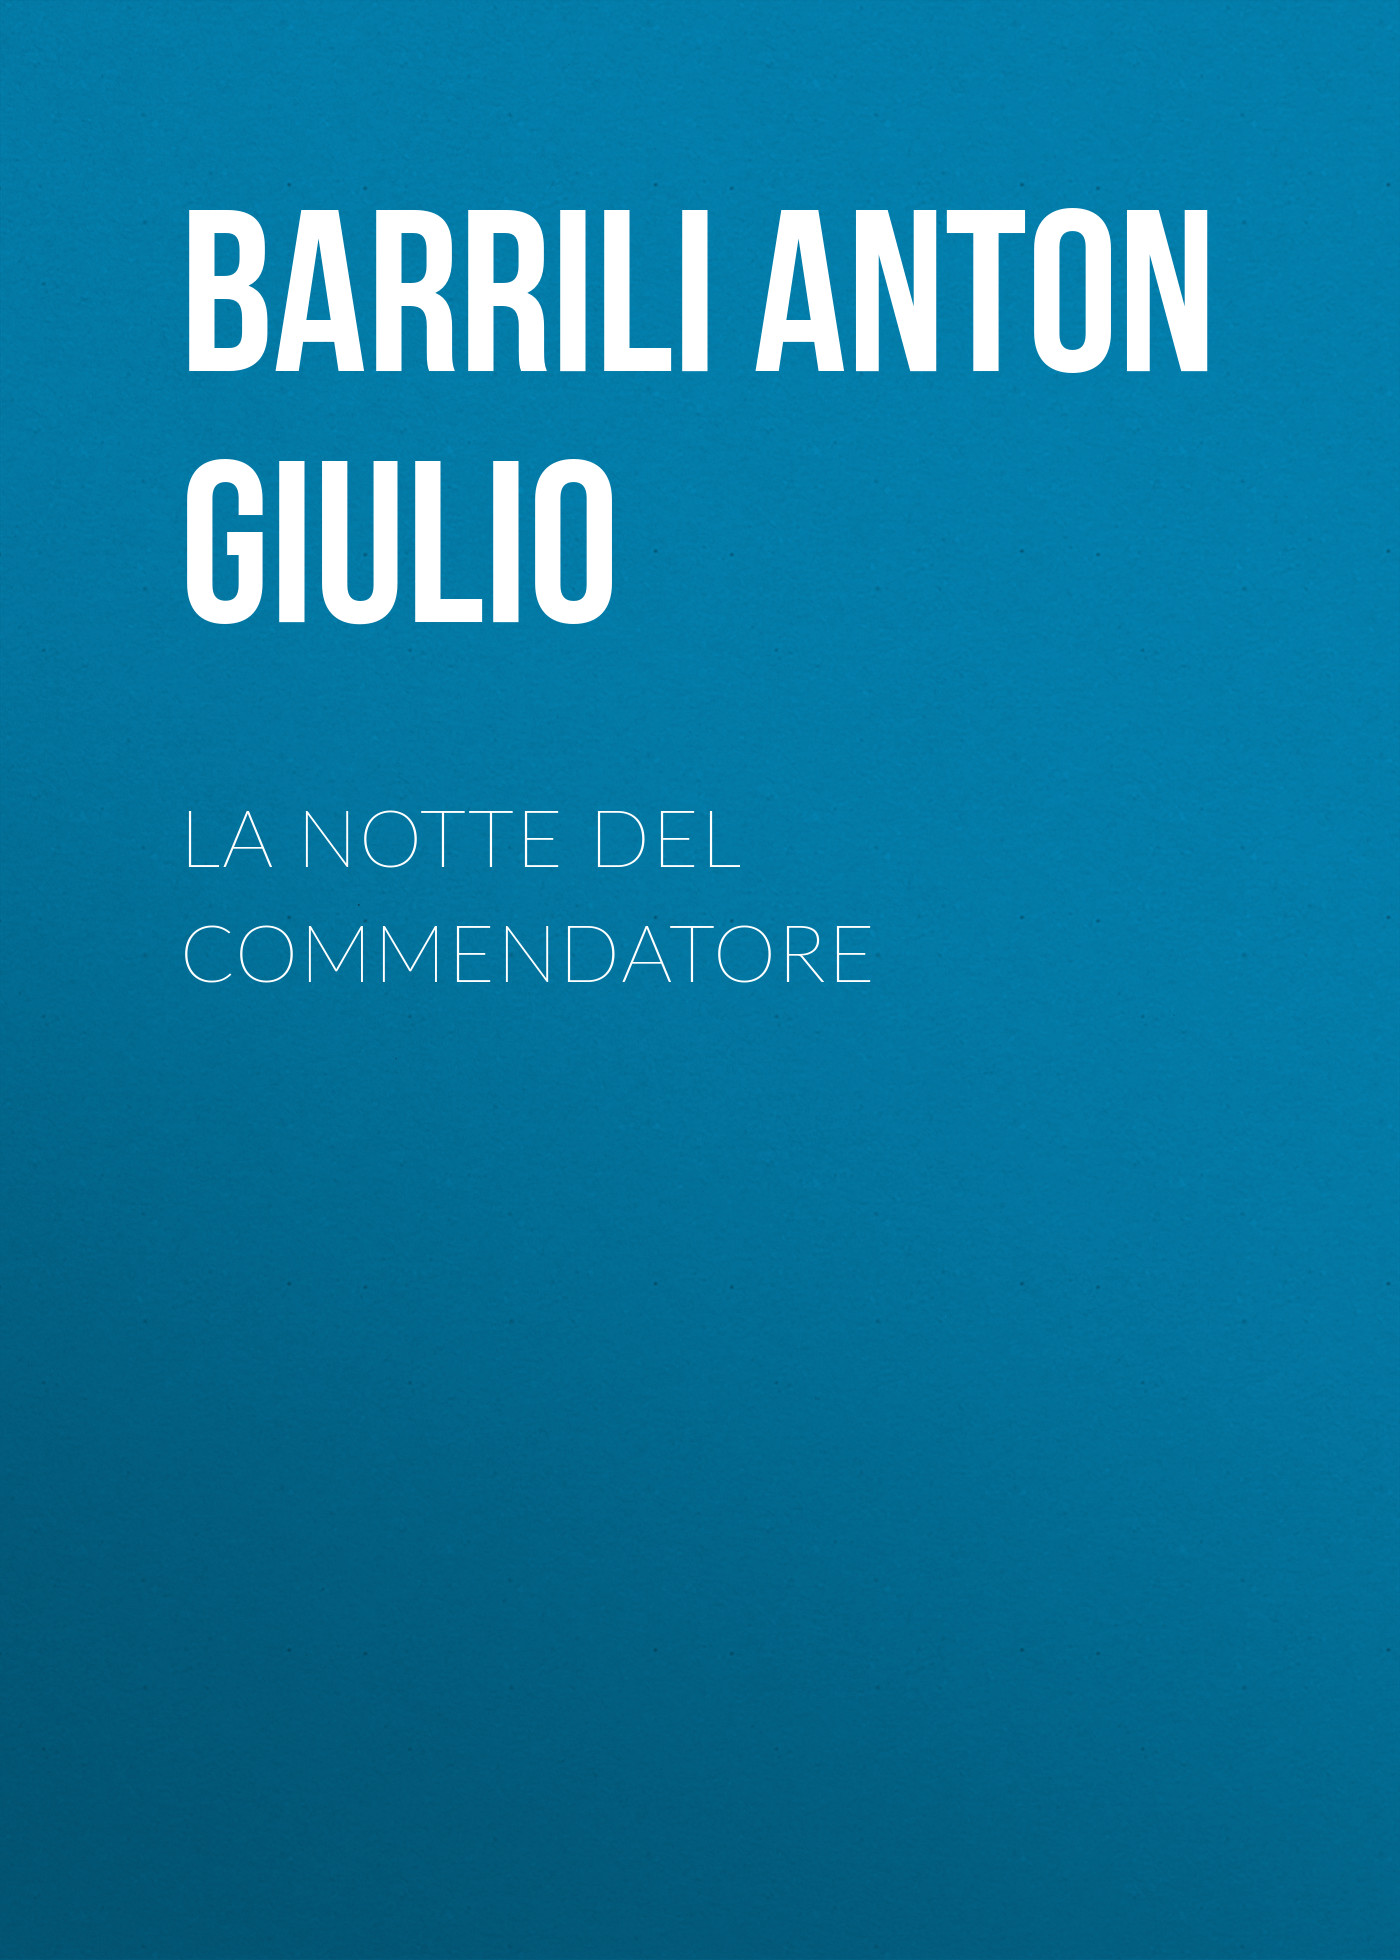 Книга La notte del Commendatore из серии , созданная Anton Barrili, может относится к жанру Зарубежная старинная литература, Зарубежная классика, Зарубежные любовные романы. Стоимость электронной книги La notte del Commendatore с идентификатором 36367270 составляет 0 руб.